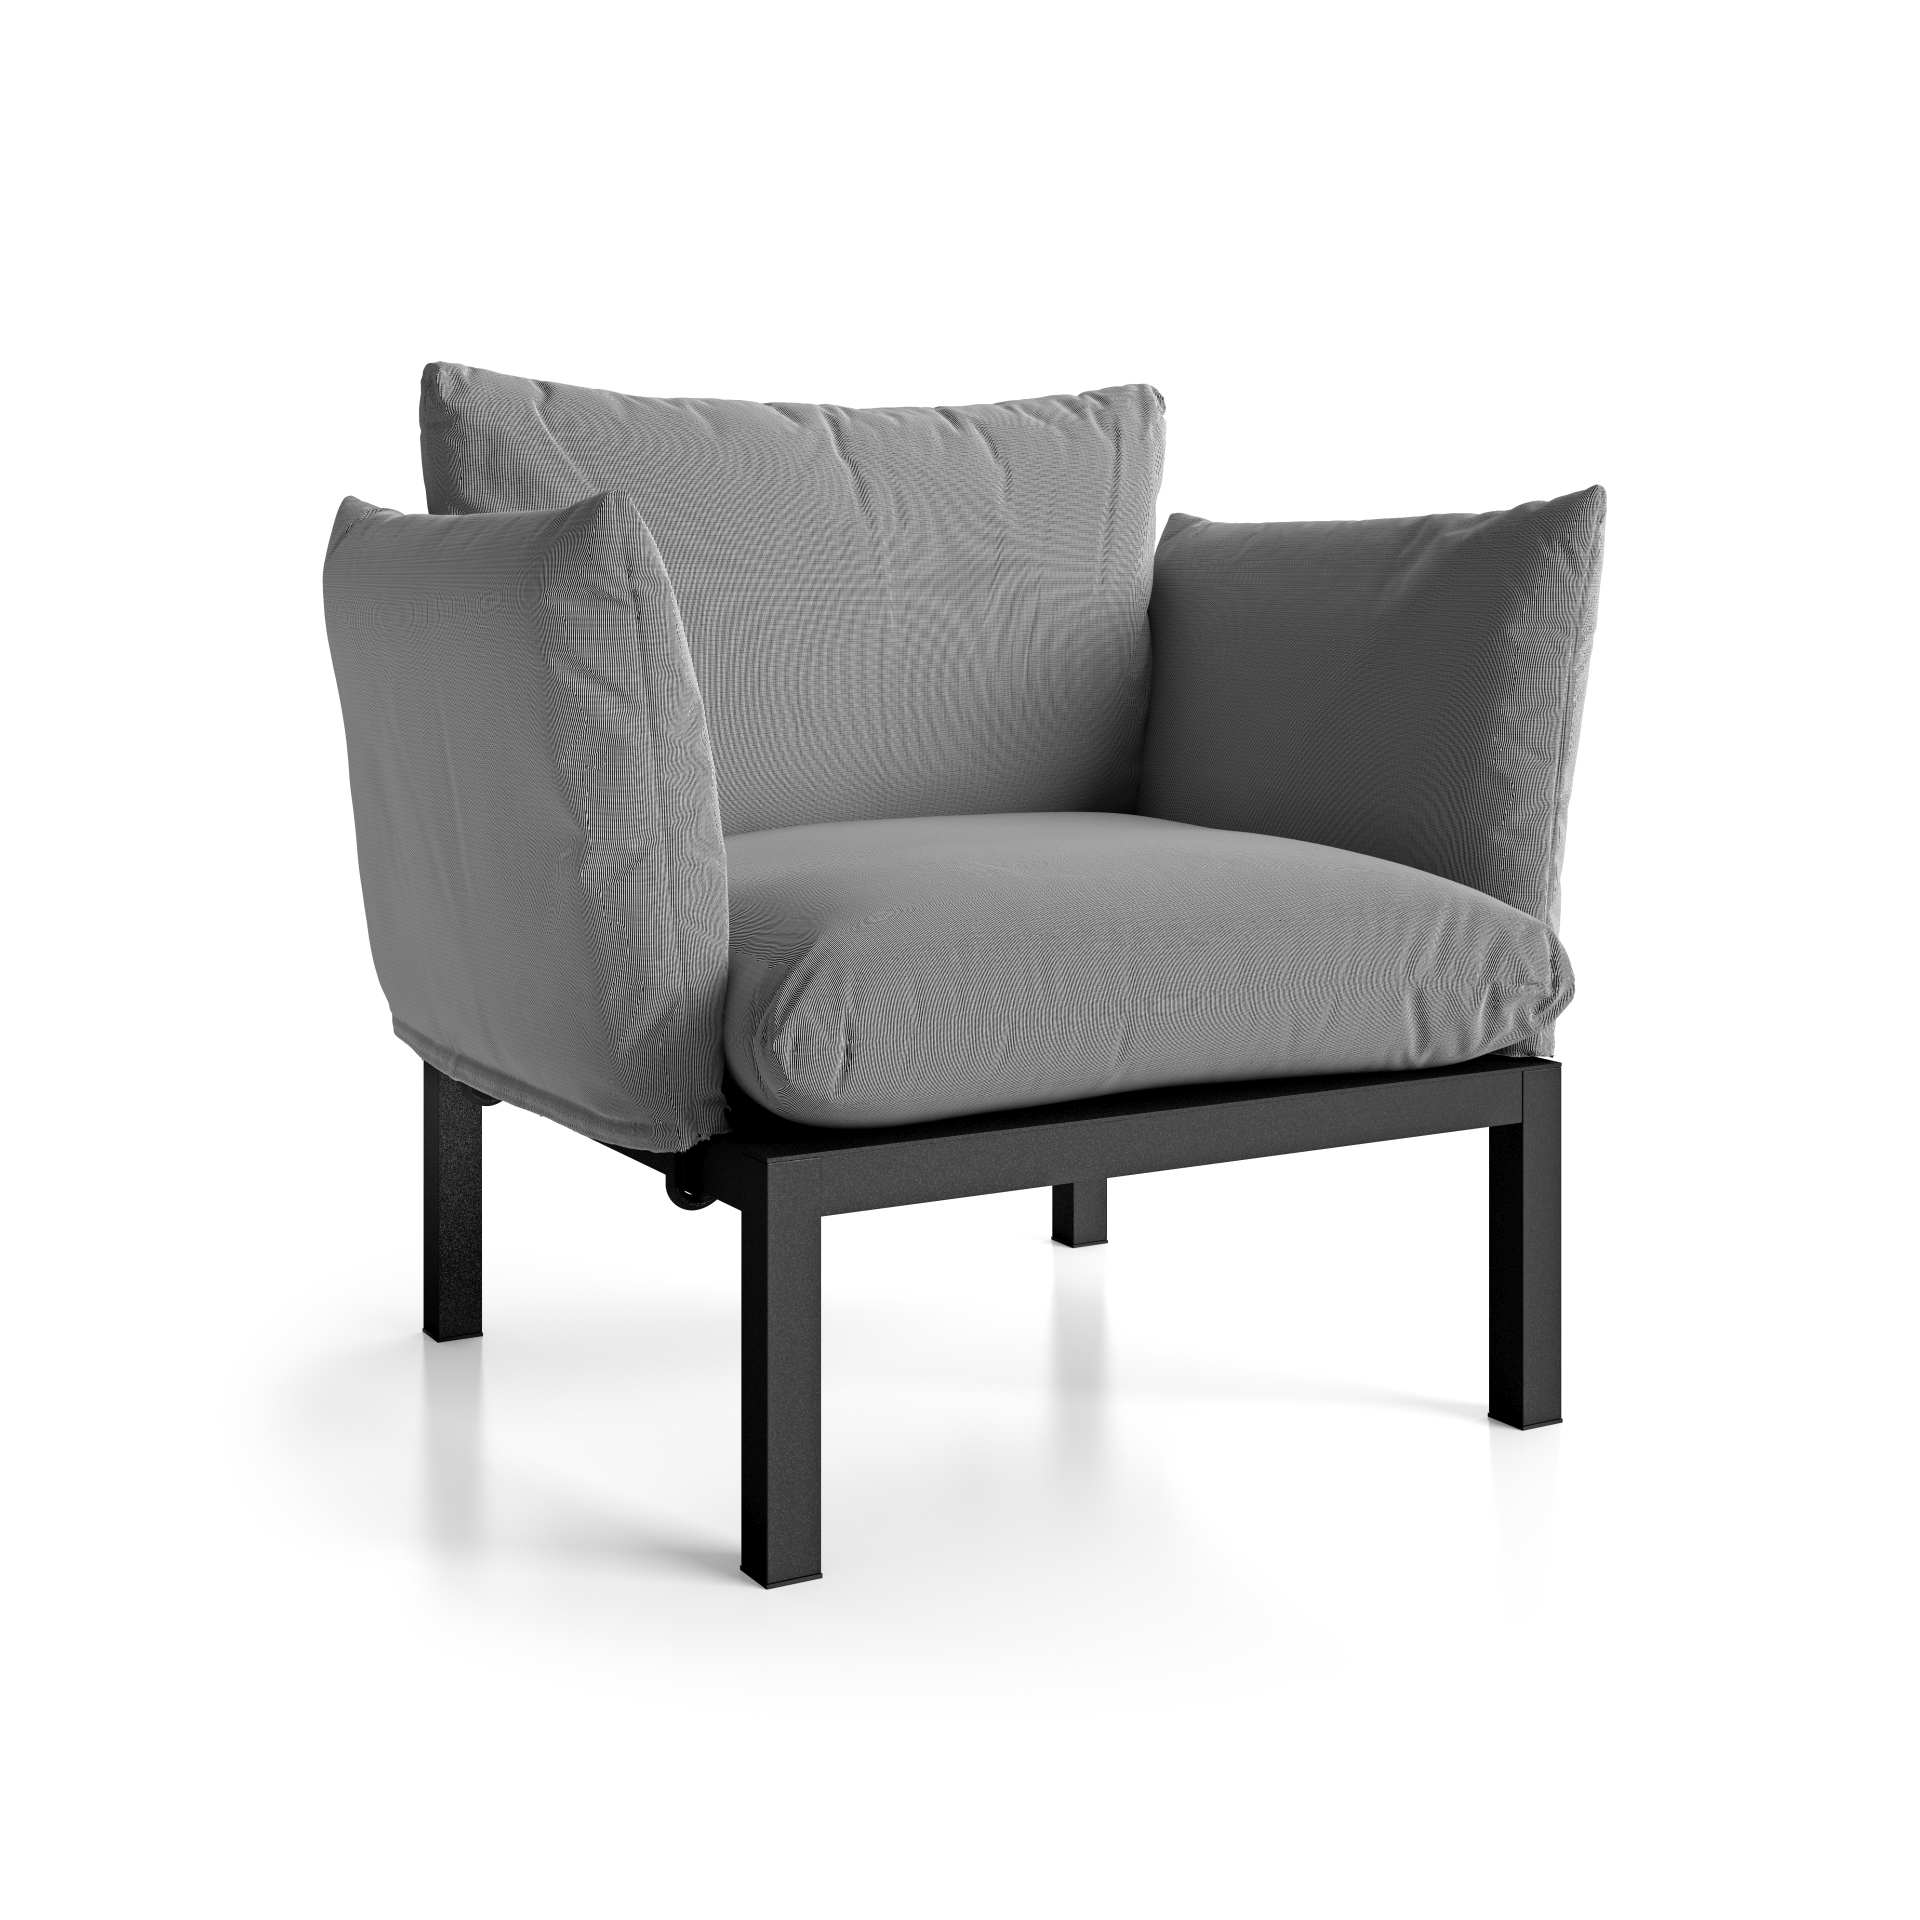 Der moderne Sessel Domino überzeugt mit seinem modernen Design. Er verfügt über ein Aluminium Gestell und ist somit perfekt für den Outdoor-Bereich einsetzbar. Designet wurde er von der Marke Jan Kurtz. Und hat die Farbkombination Gestell Taupe und Bezug 